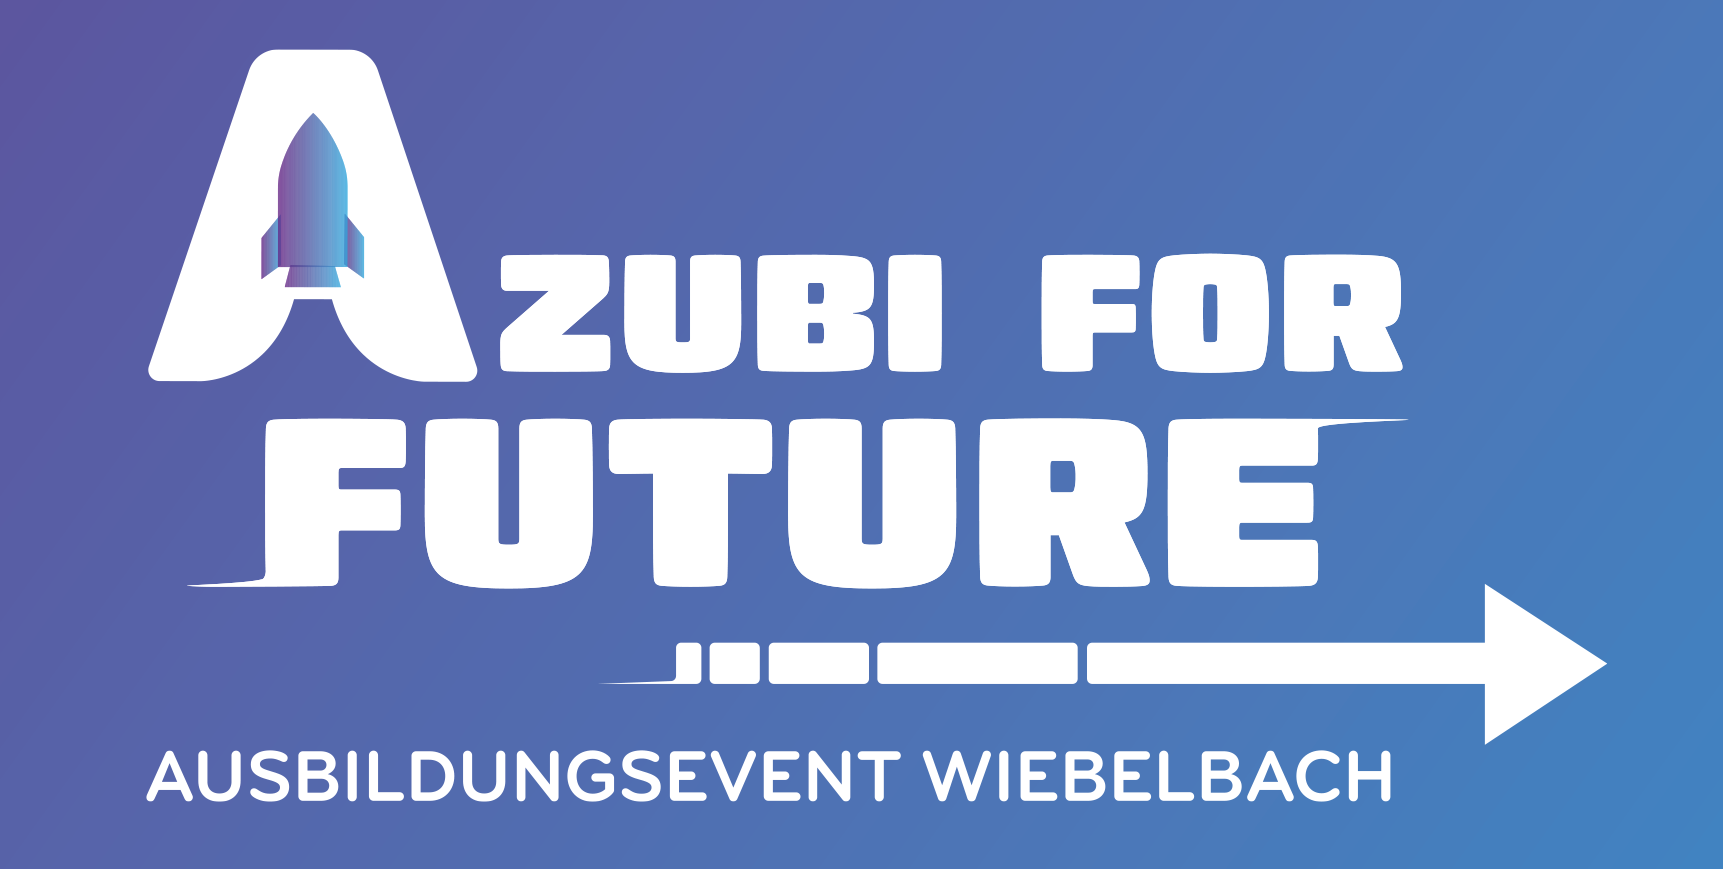 Ausbildungsevent Wiebelbach Azubi for Future